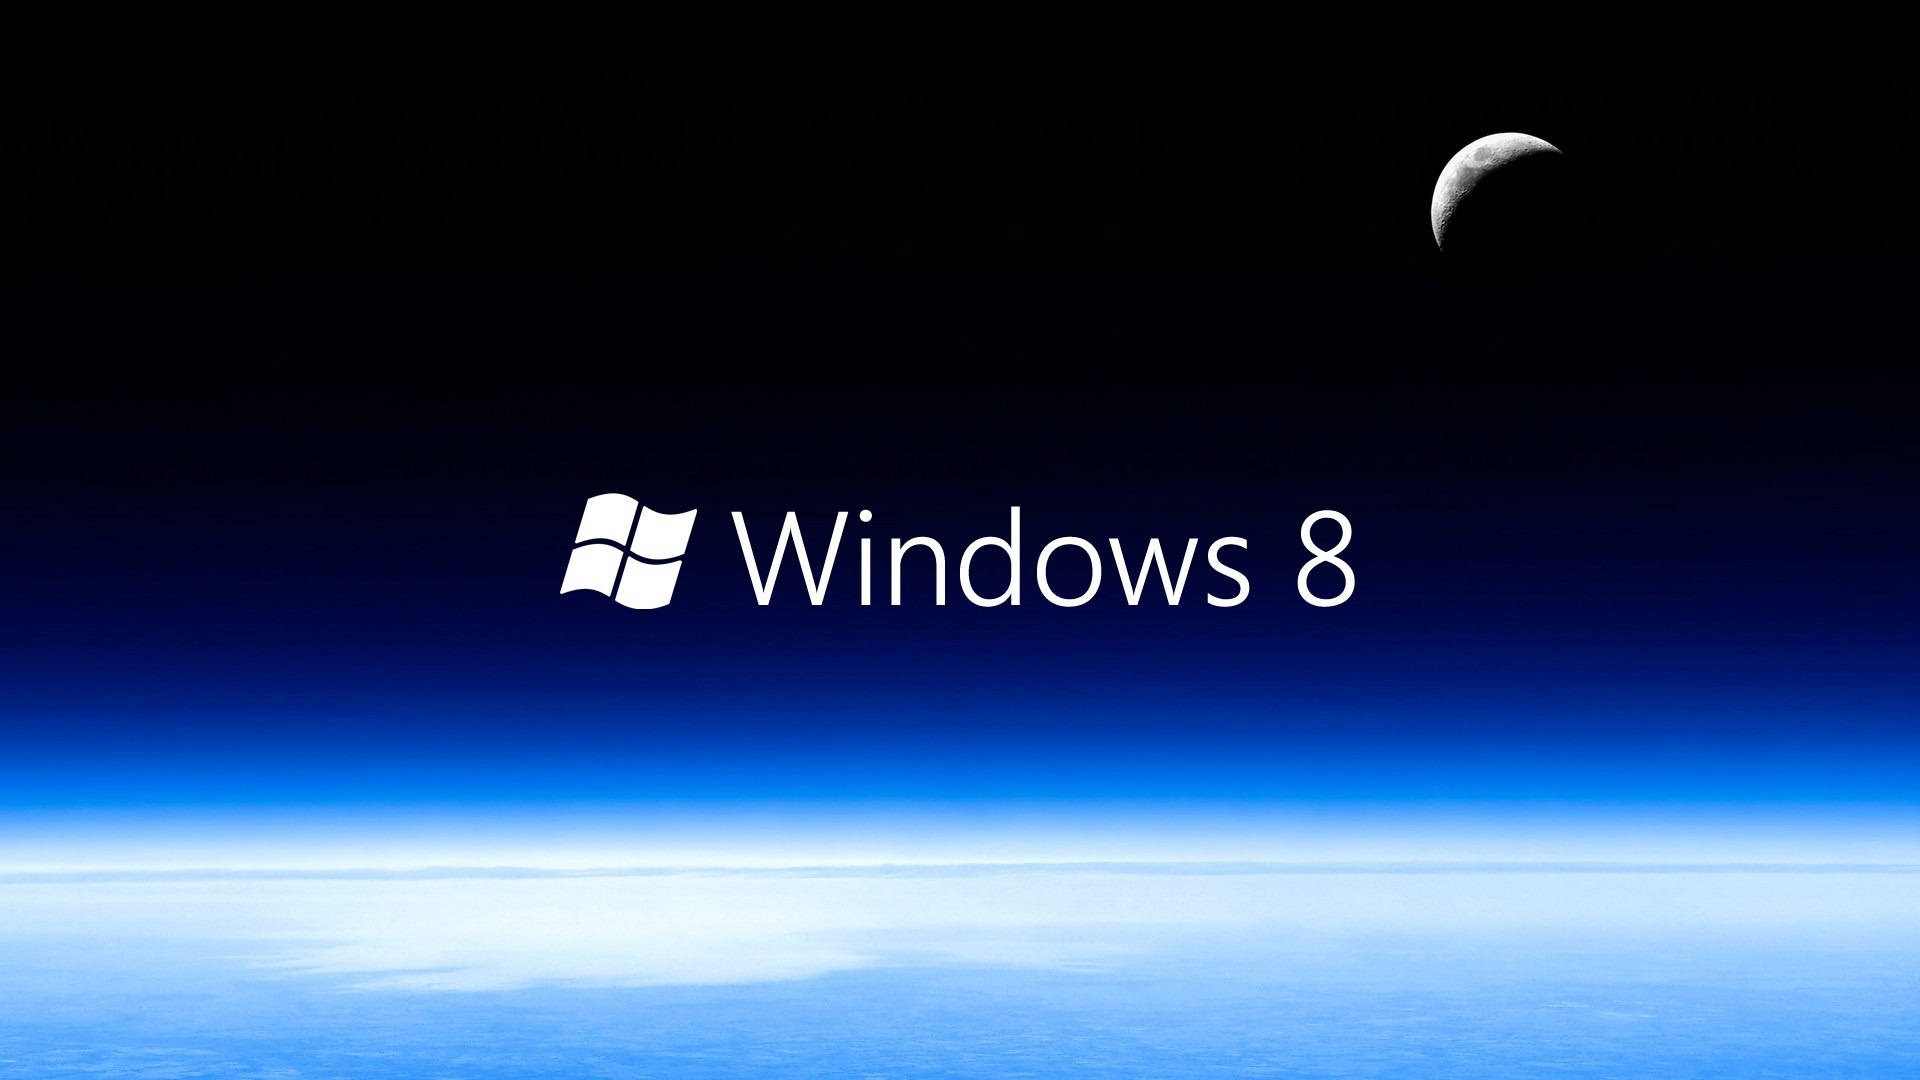 Immagini Di Windows 8